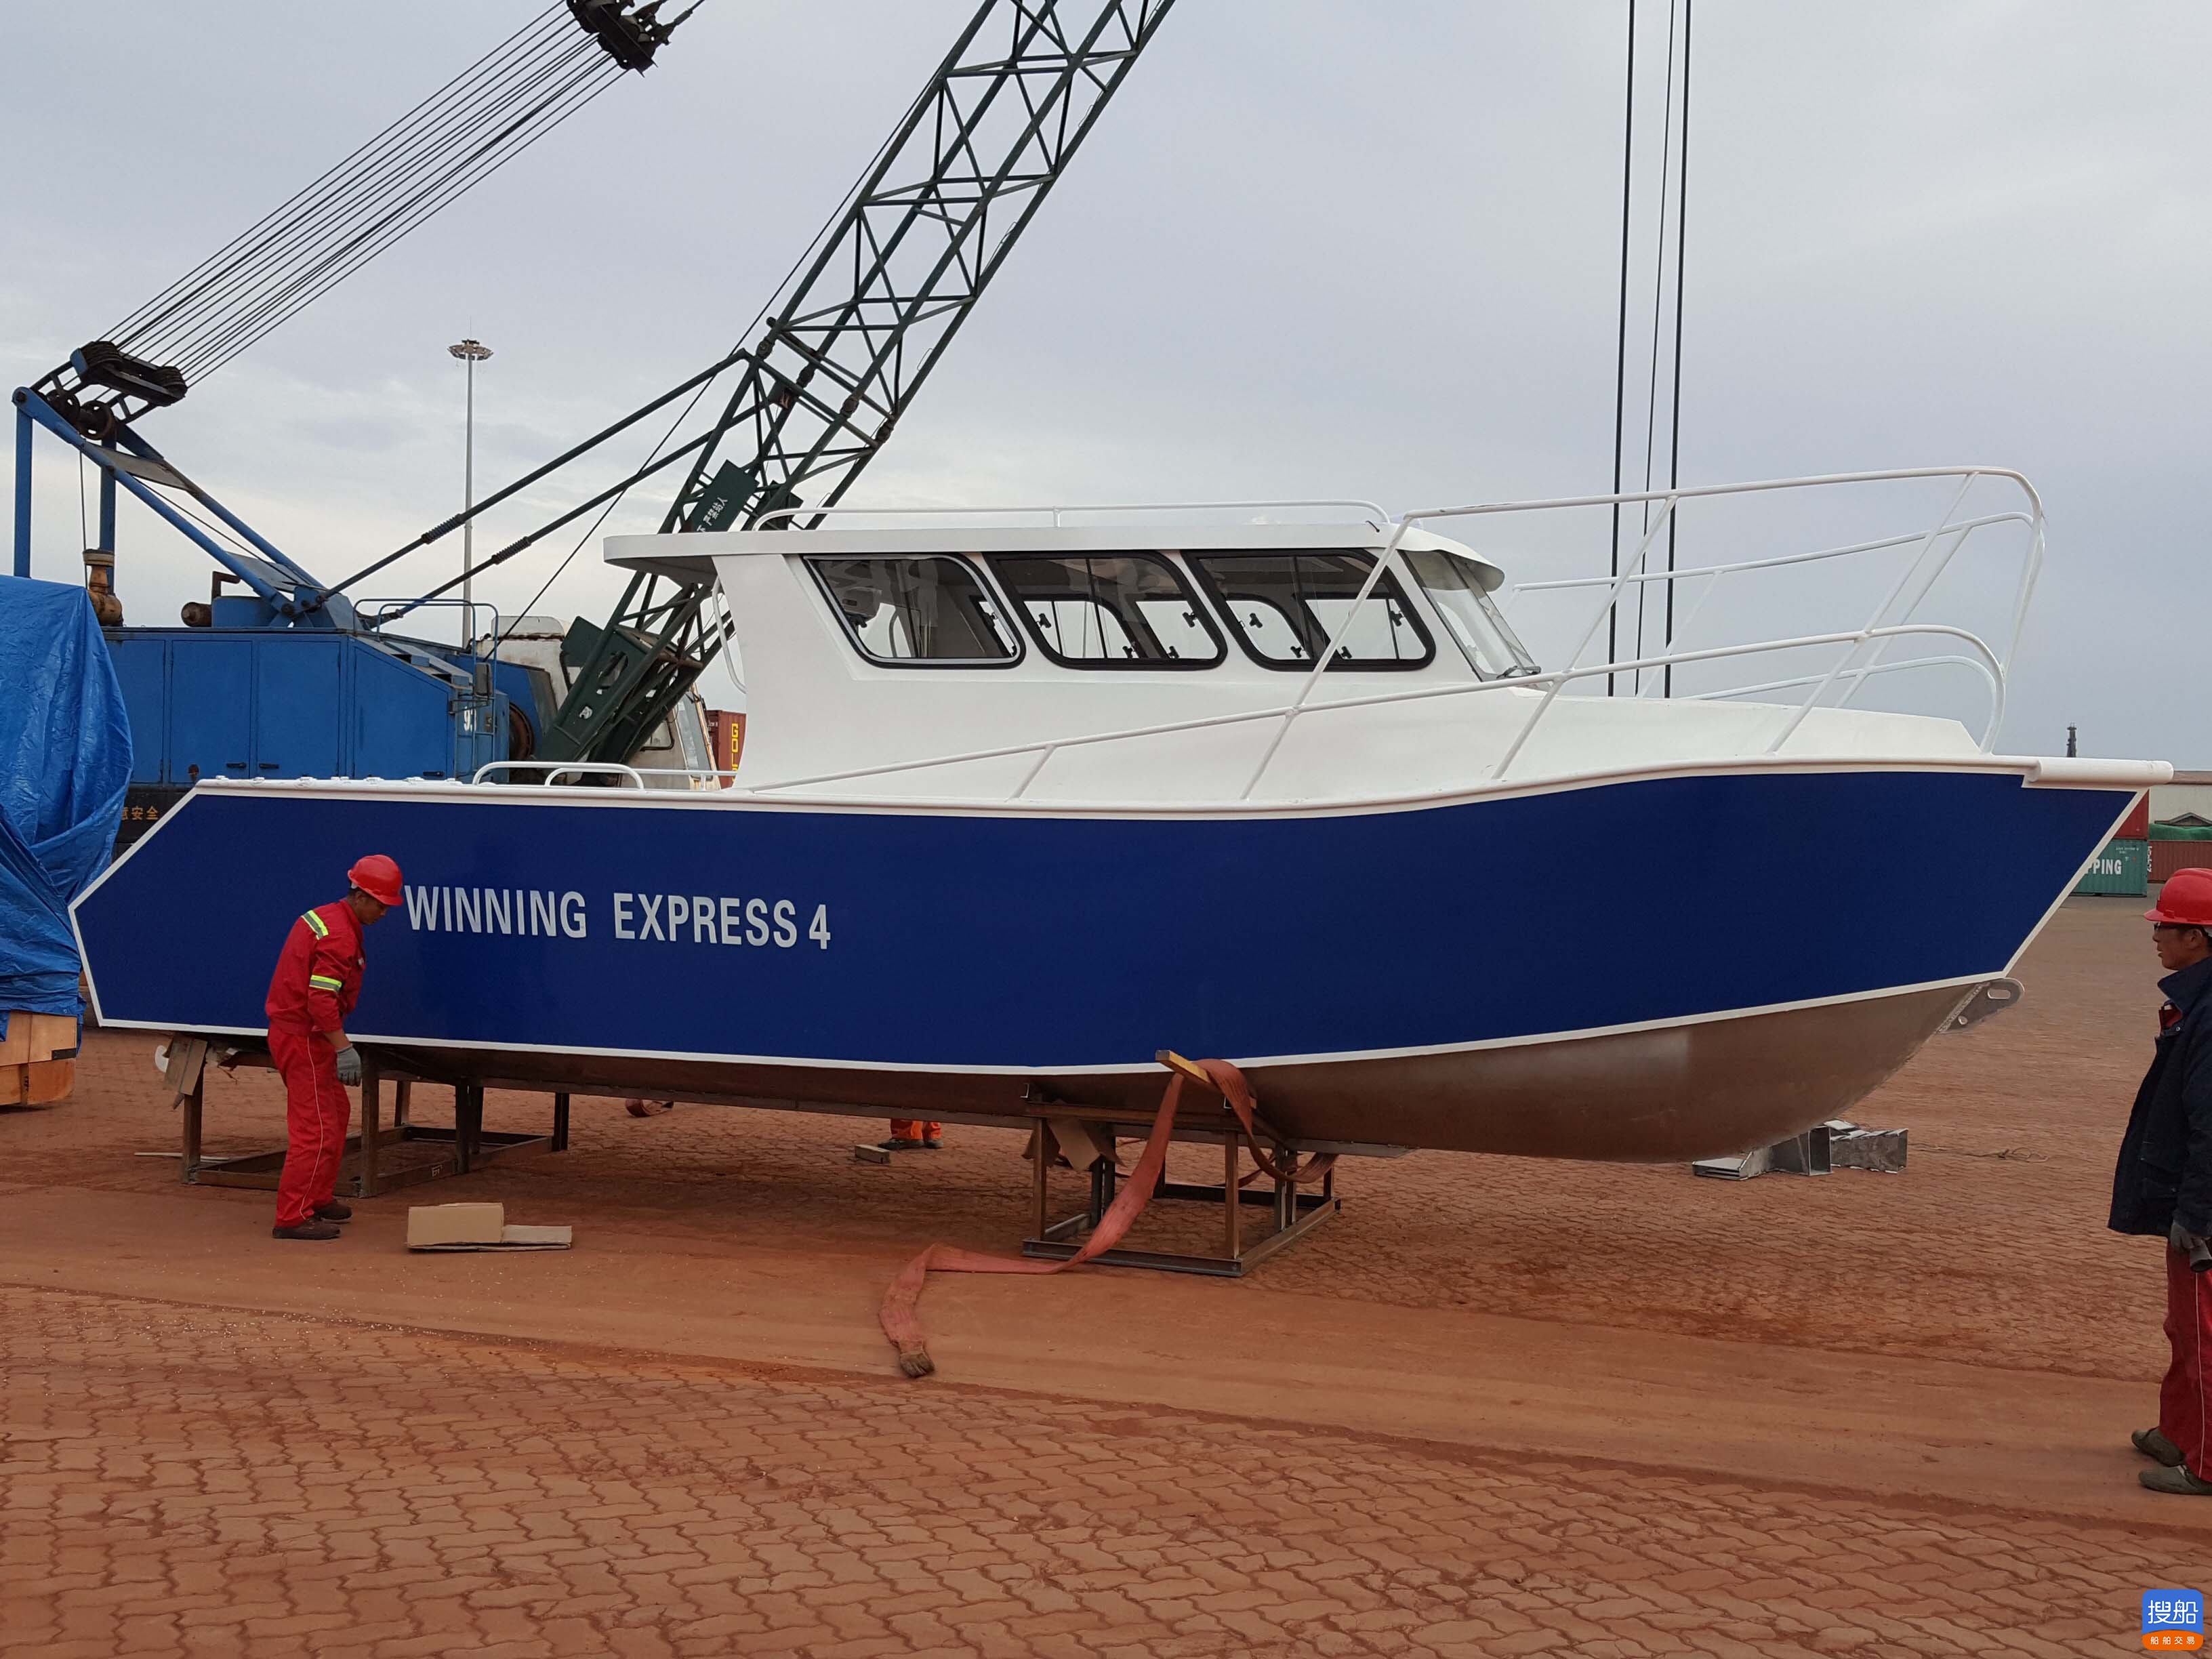 9.5米运输艇 小型快艇报价钓鱼艇厂家渔船铝合金钓鱼船